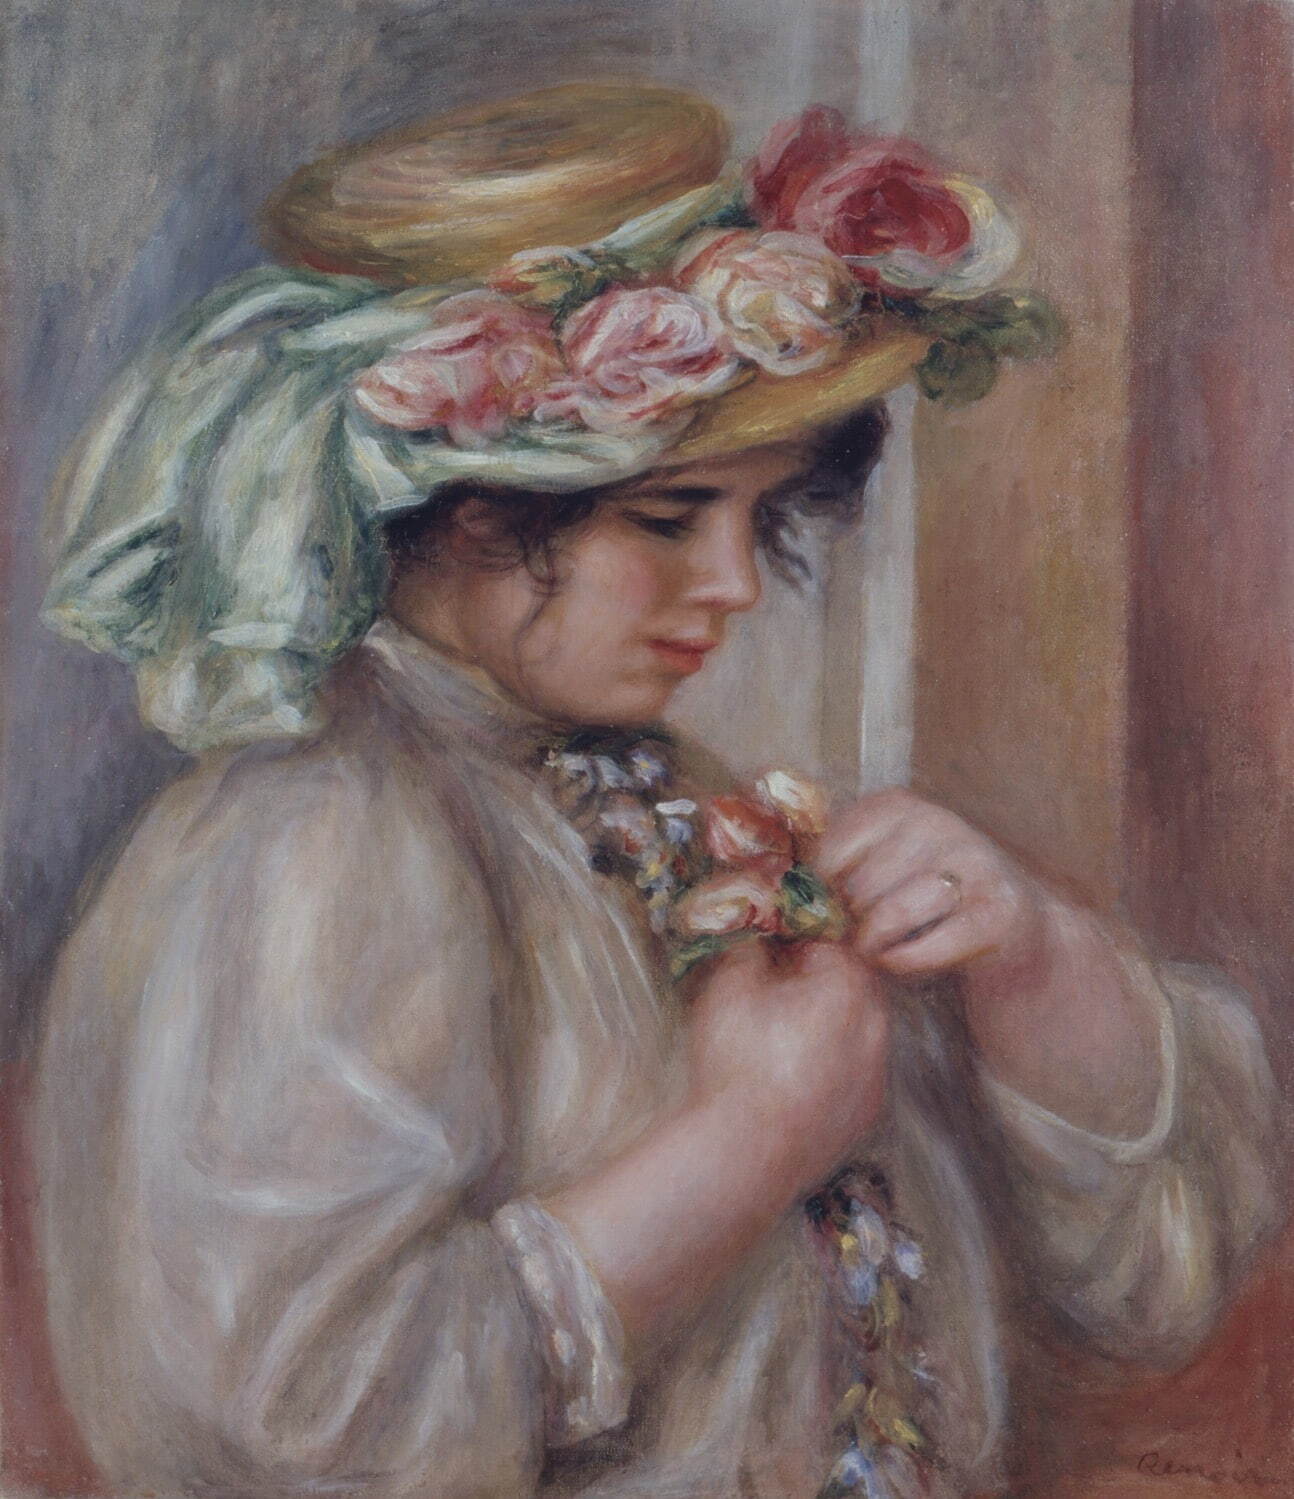 ピエール＝オーギュスト・ルノワール 《胸に花を飾る少女》
1900年頃　油彩・キャンバス　熊本県立美術館蔵